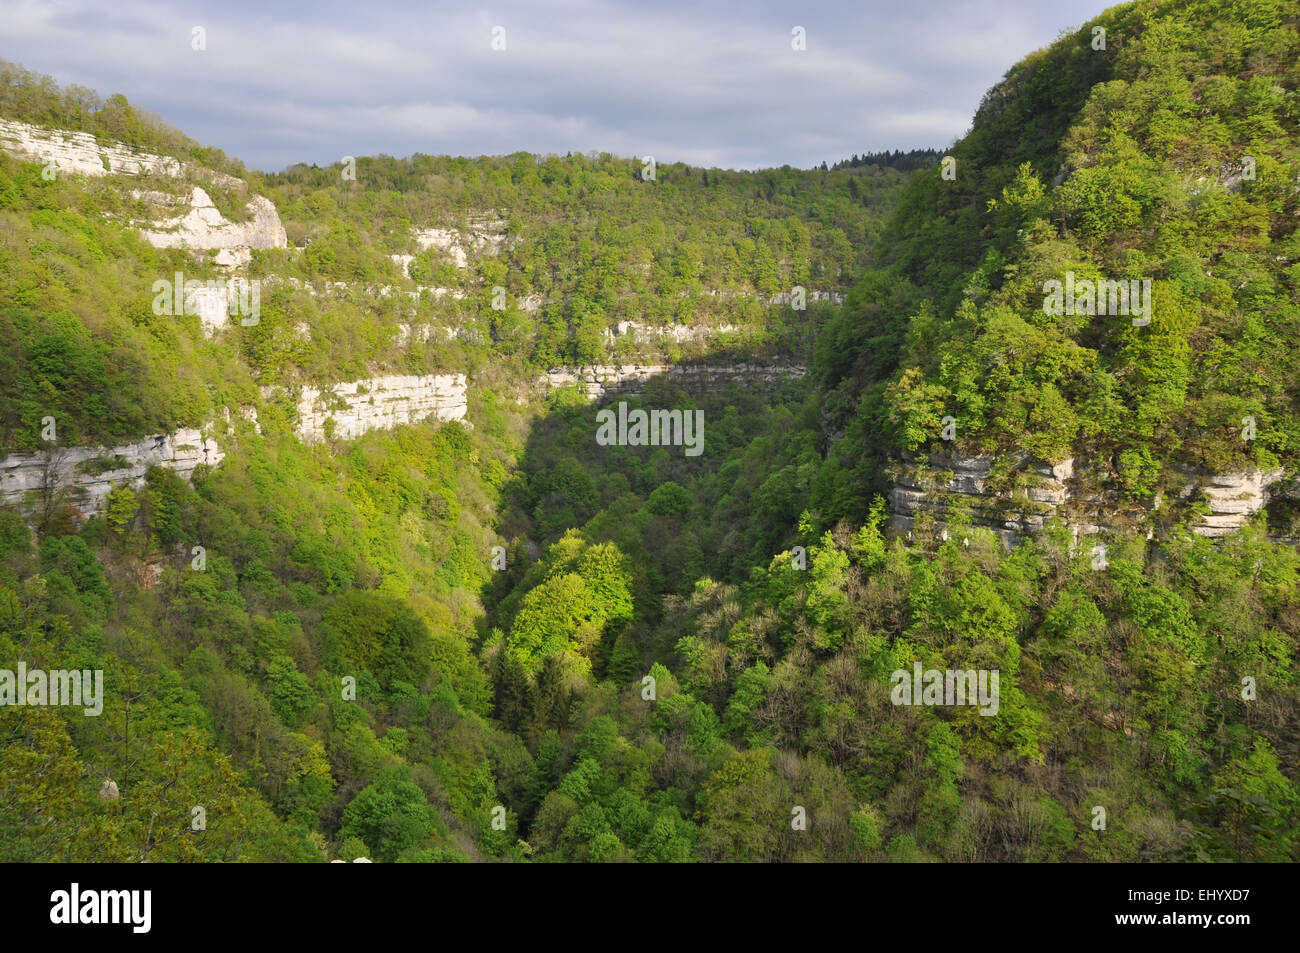 France, Europe, Jura, loue, gulch, vantage point, vista, outlook, mouthier haute Pierre, franche-comté Stock Photo